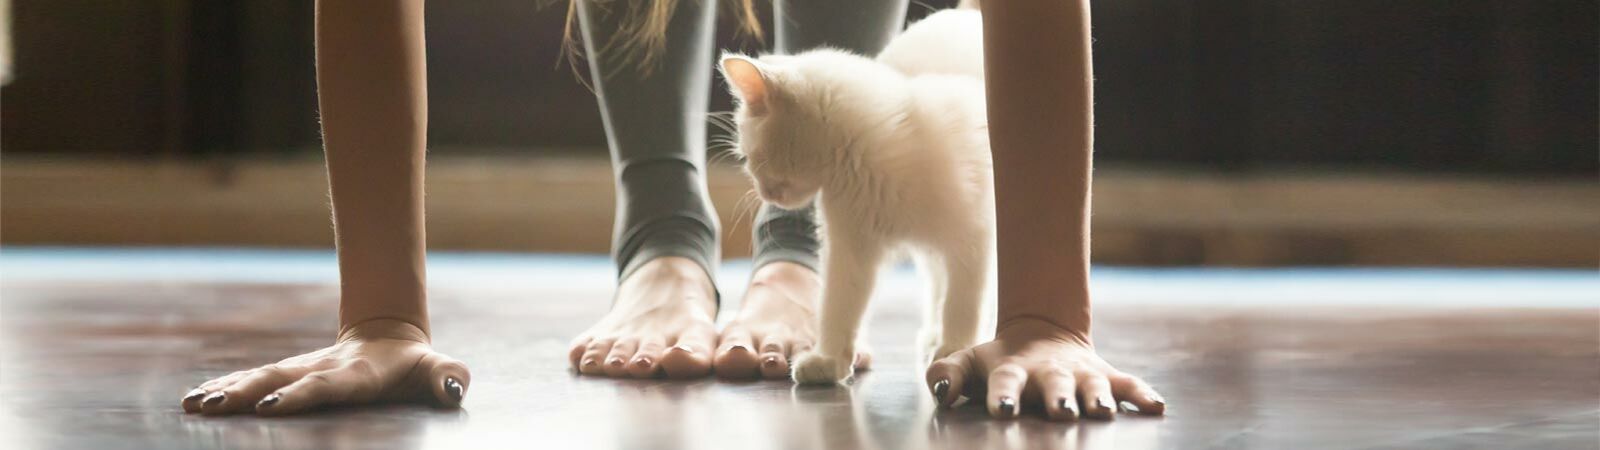 Eine Frau macht Yoga und eine weiße Katze liegt neben ihr.